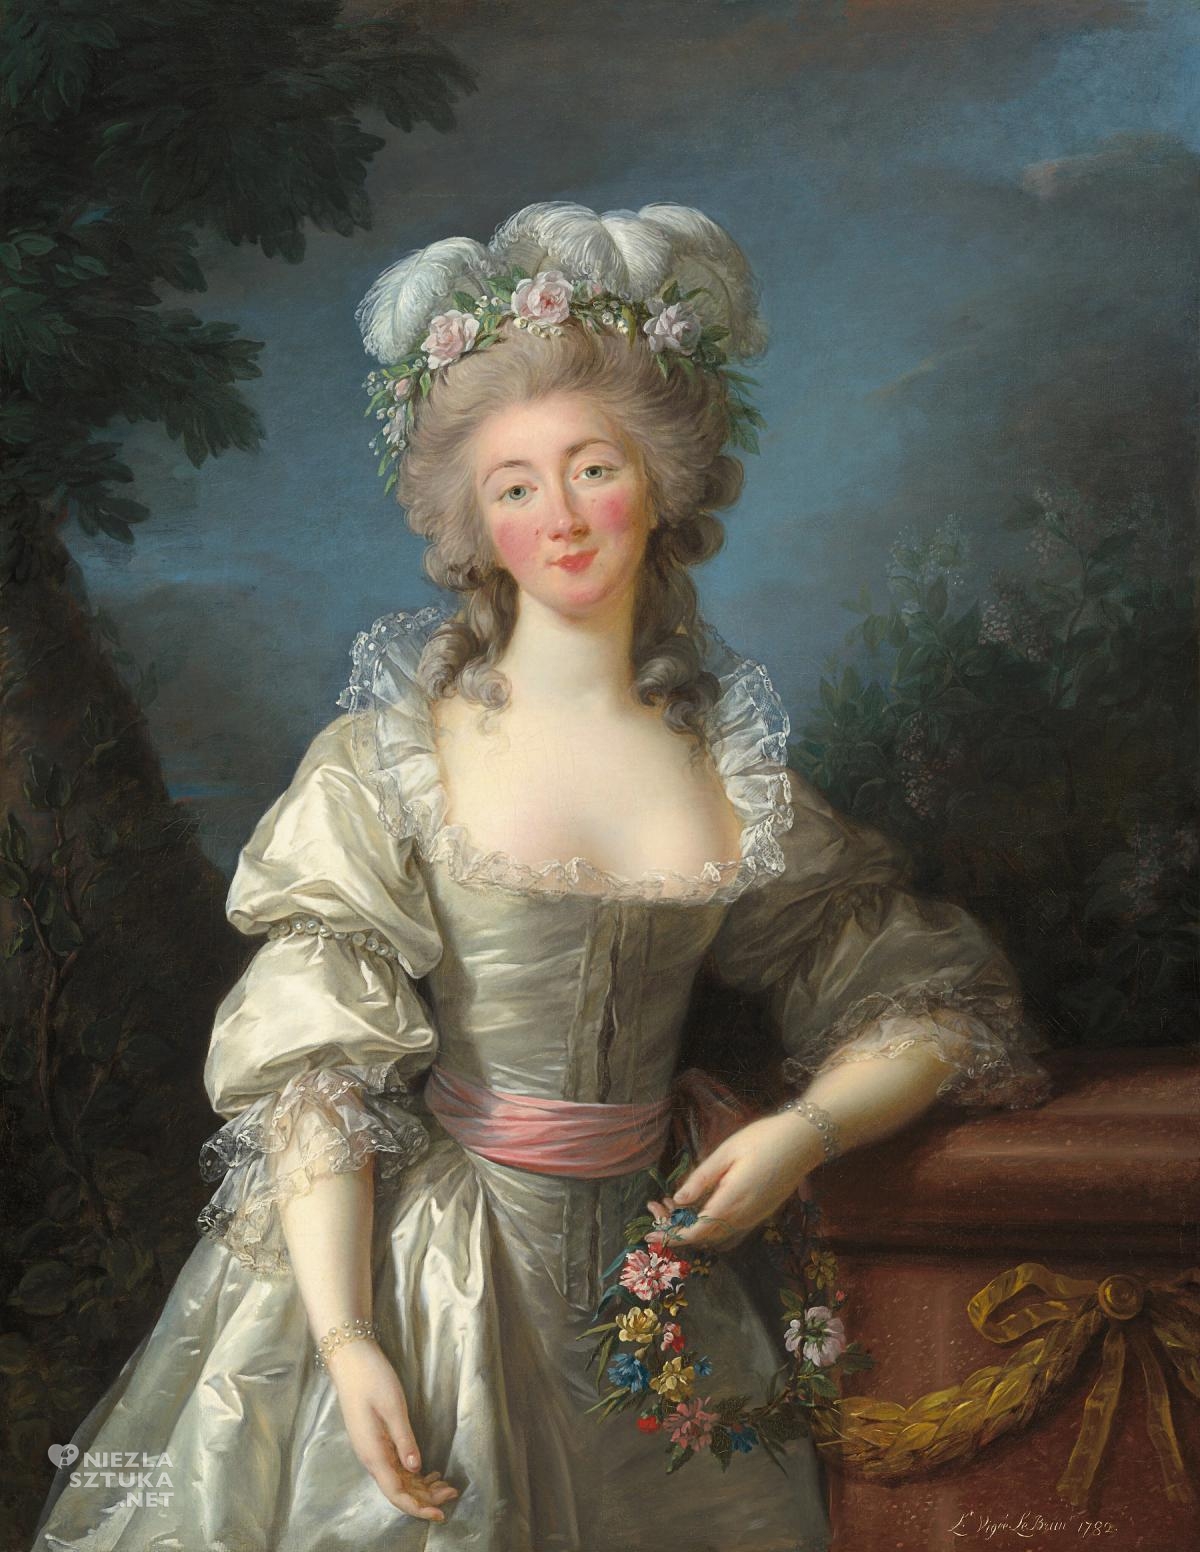 Élisabeth Vigée Le Brun, Madame du Barry, sztuka francuska, kobiety w sztuce, Niezła Sztuka